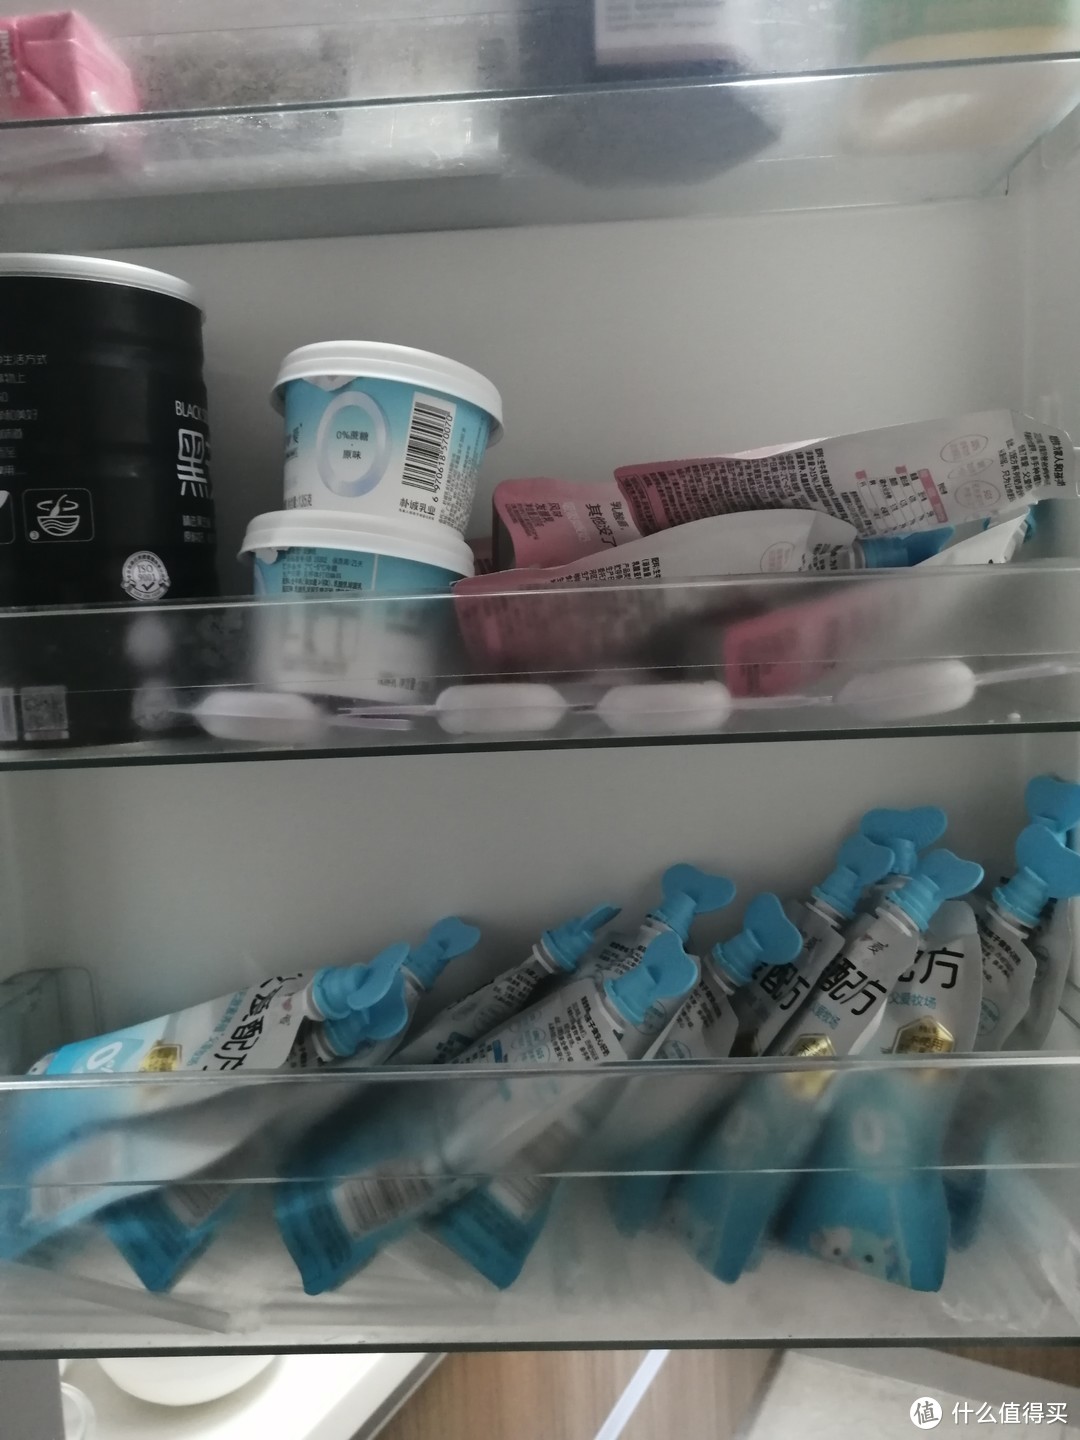 营业吧，我的宝藏乳品！|  大家快来看看酸奶大户的冰箱囤货日常。